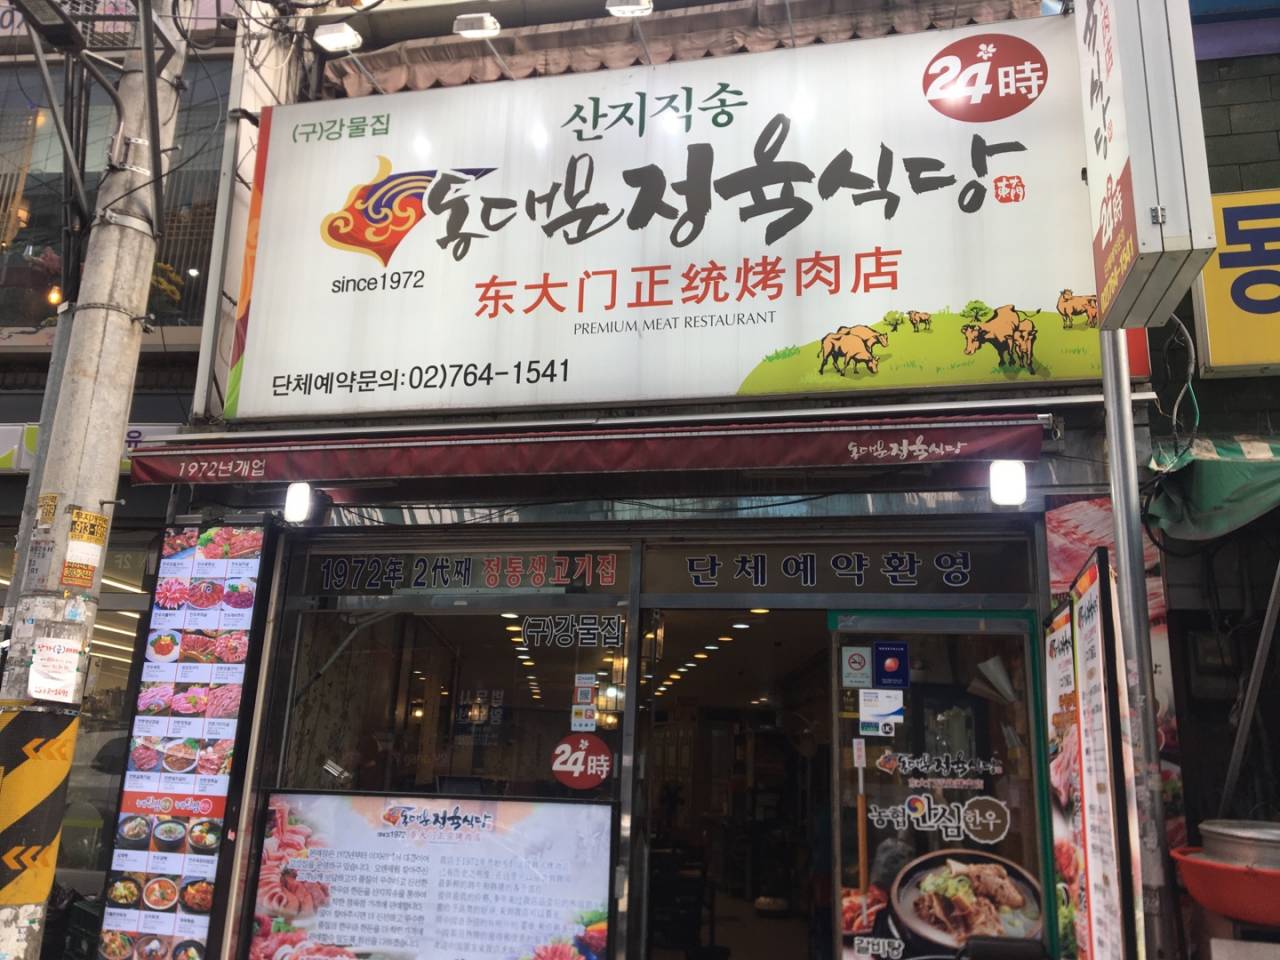 東大門正統烤肉店（동대문정육식당）